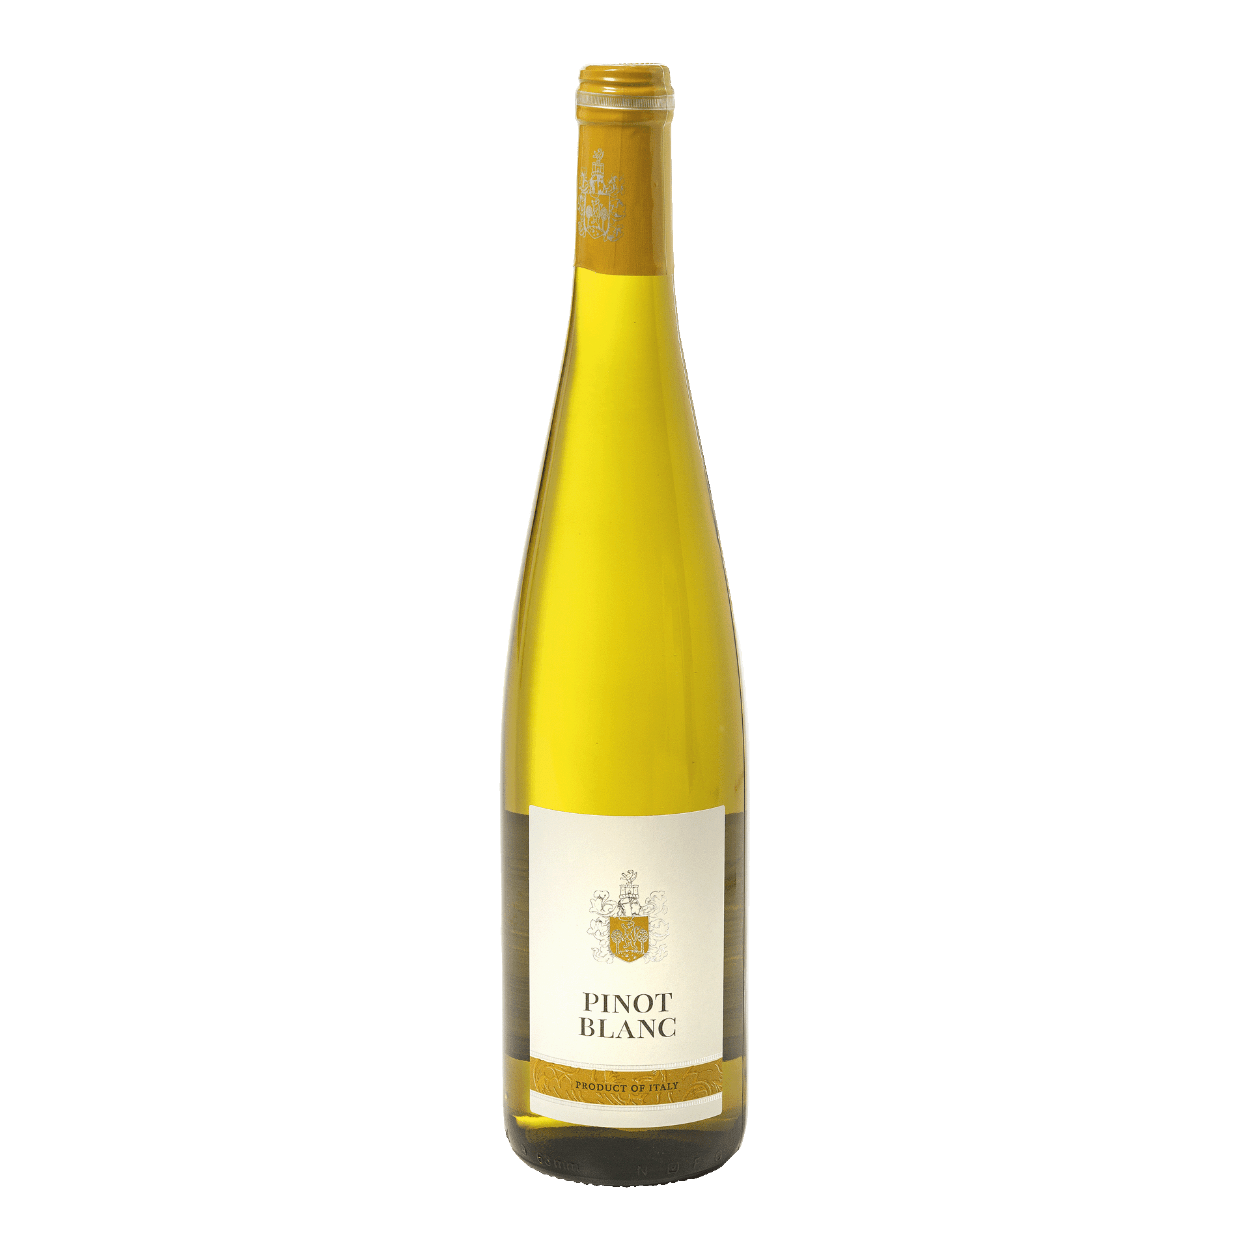  Pinot blanc  kopen aan lage prijs bij ALDI